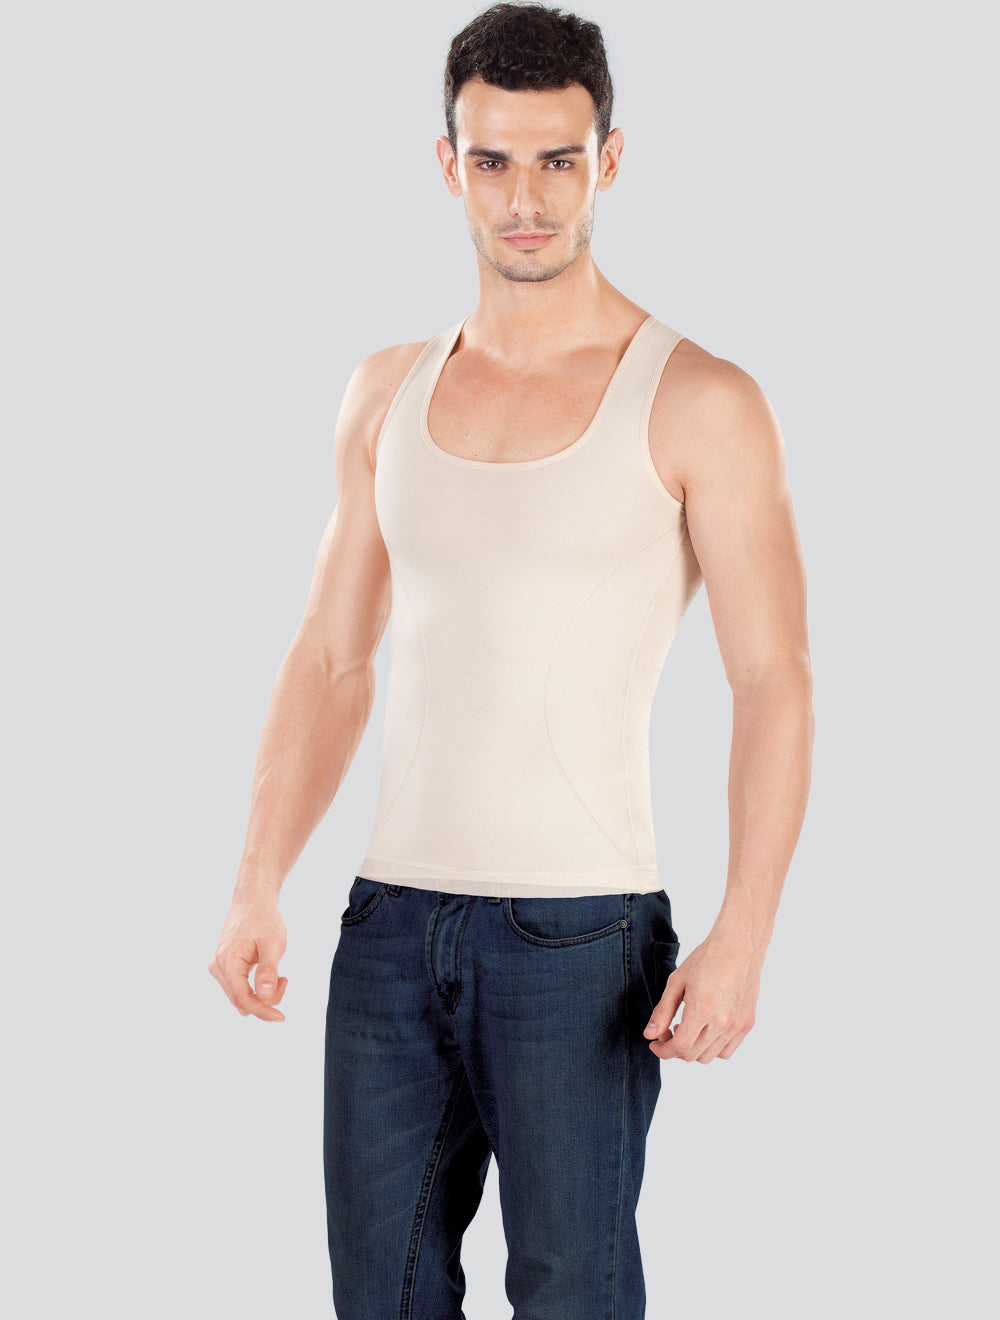 Dermawear Zenrik Shapewear Vest for Men